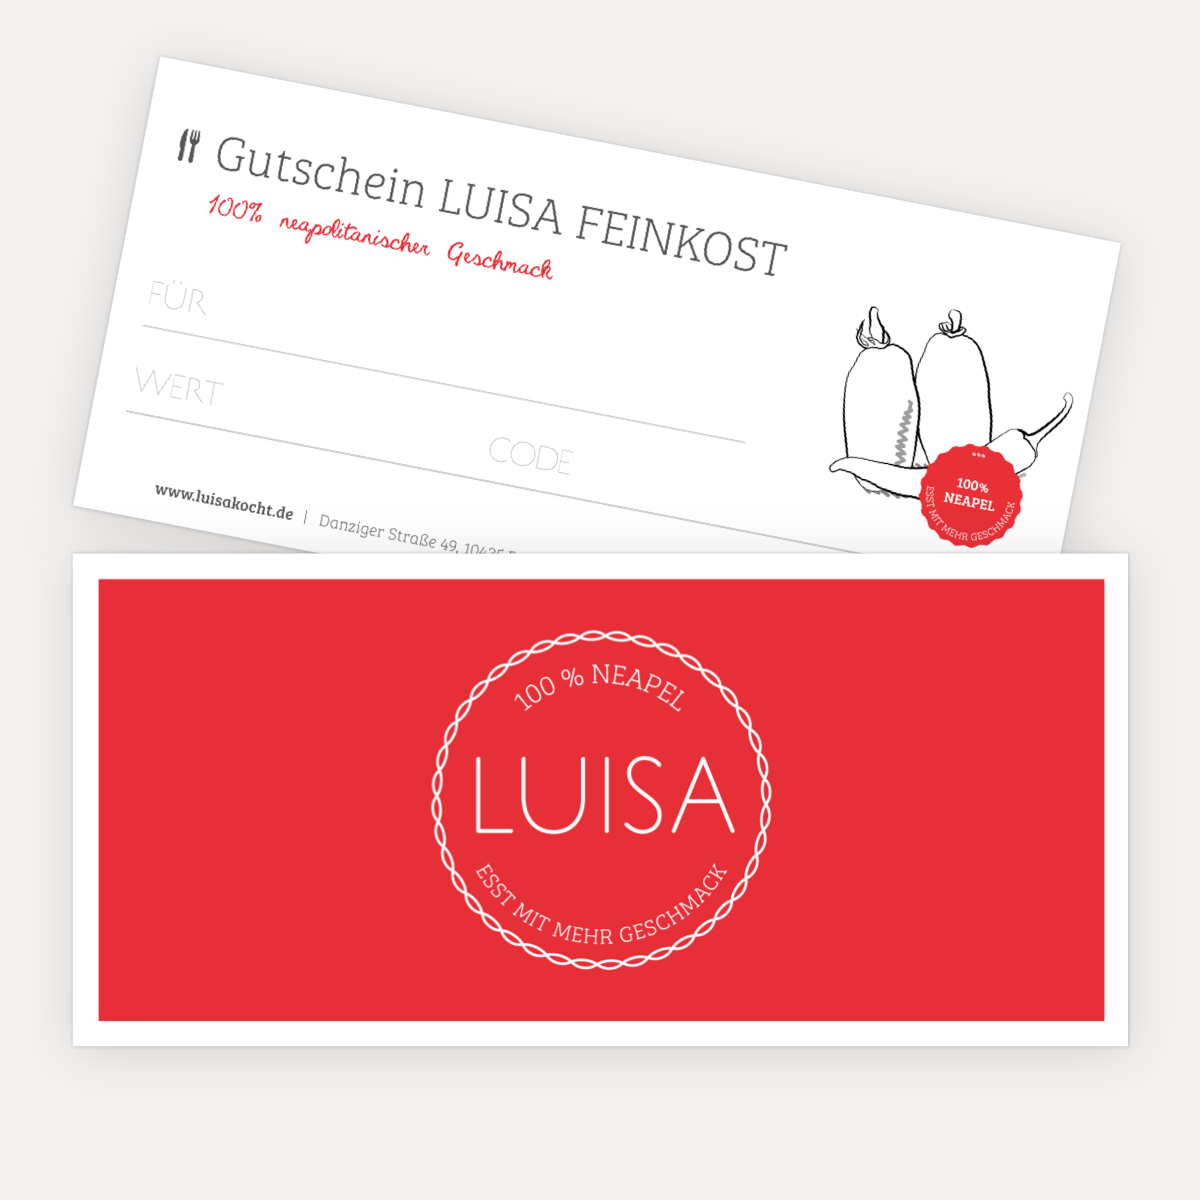 Gutschein für Feinkost - Italienische Feinkost - Lebensmittel Lieferservice - LuisaKocht Shop